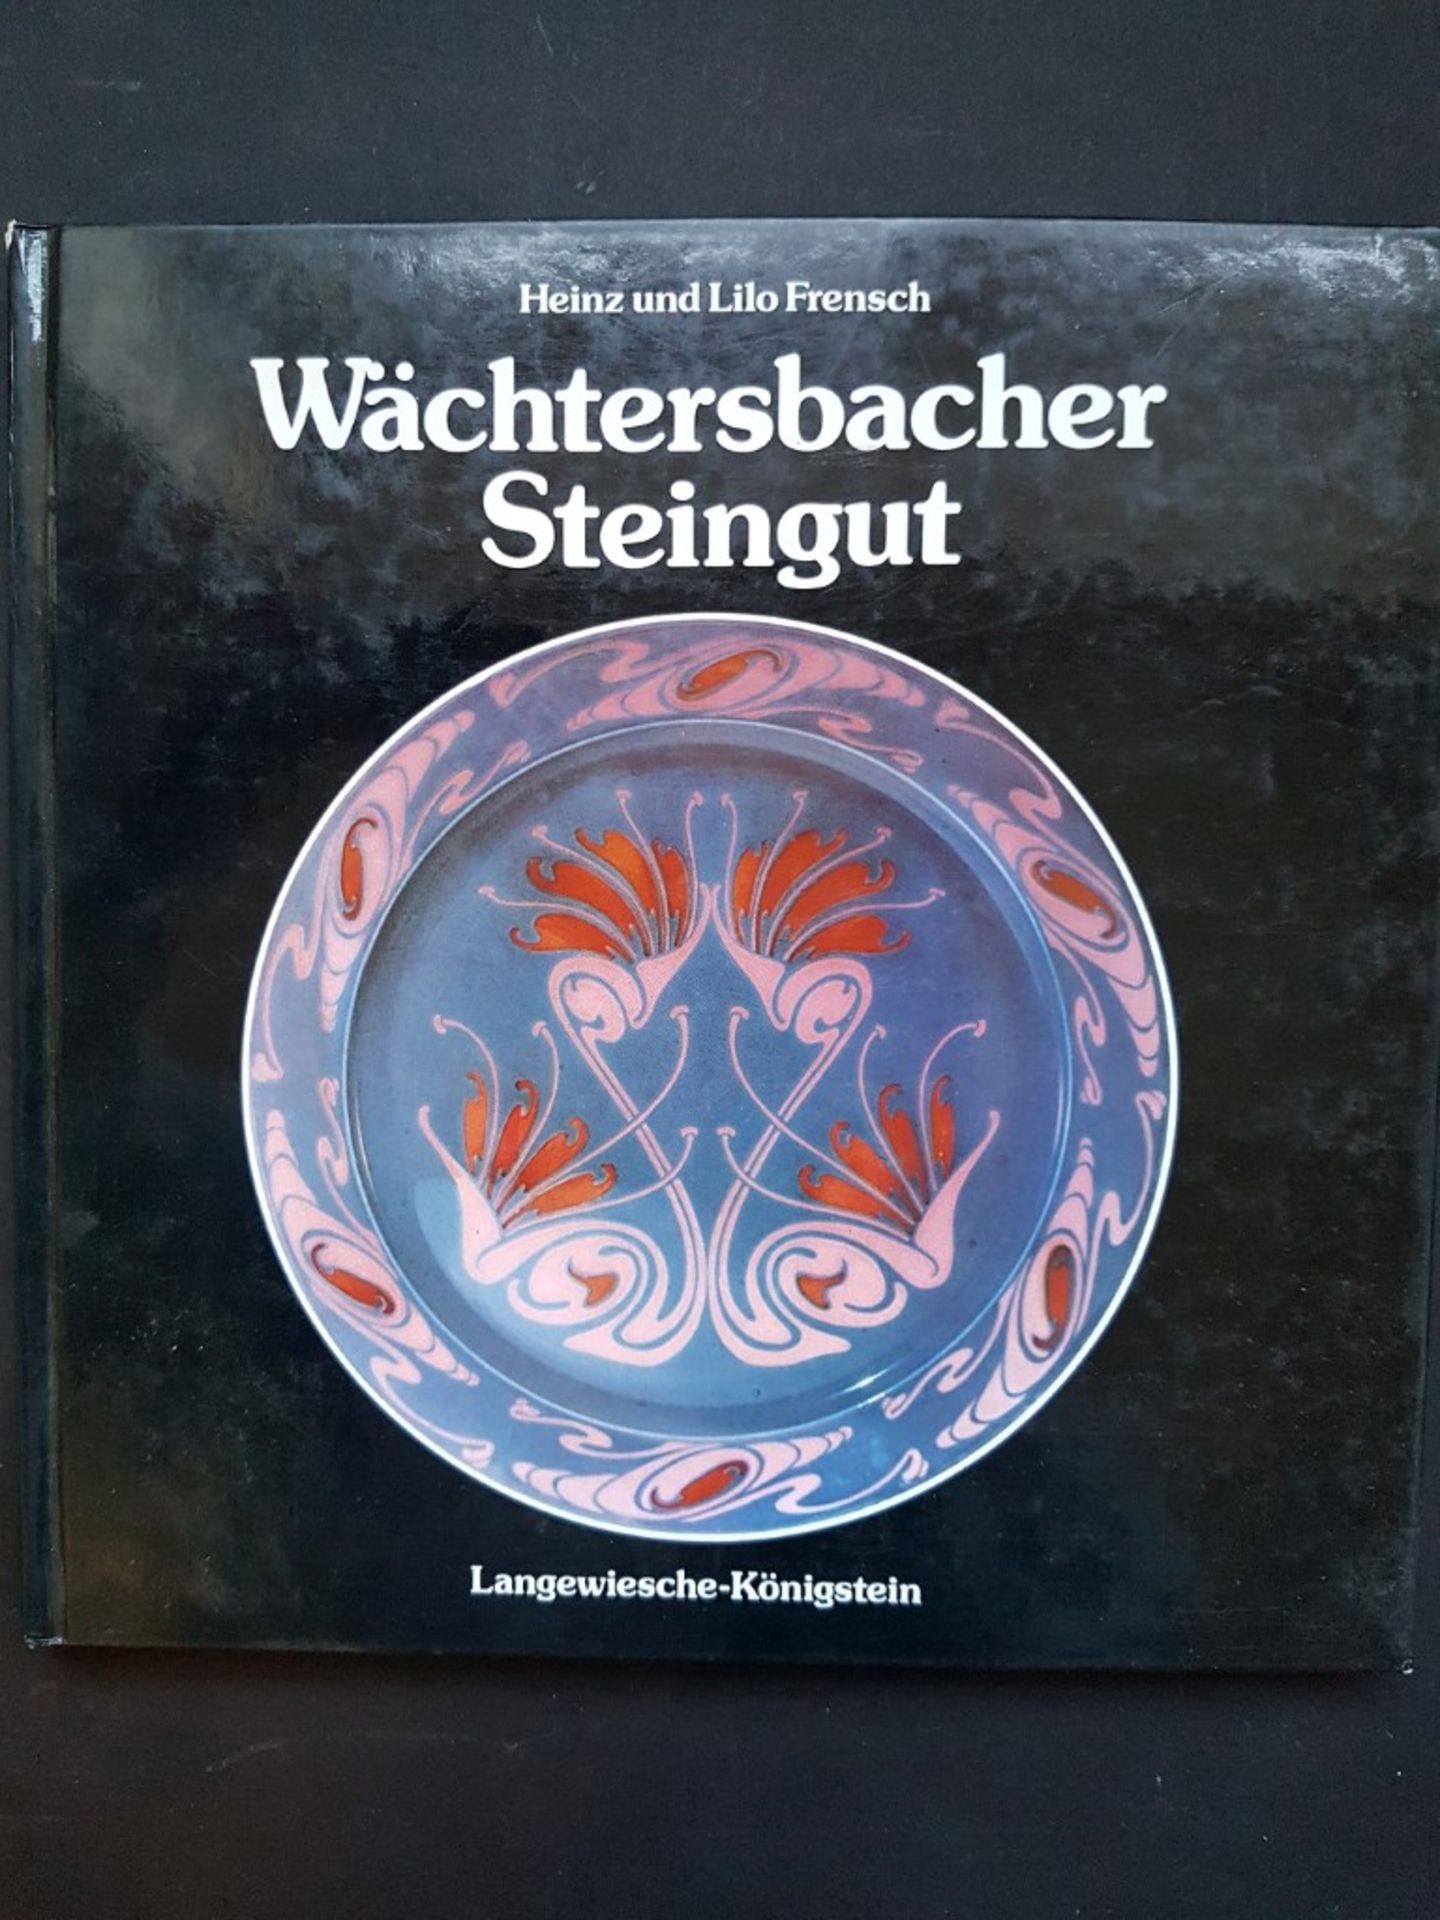 ``Wächtersbacher Steingut``, Heinz und Lilo Frensch, 197